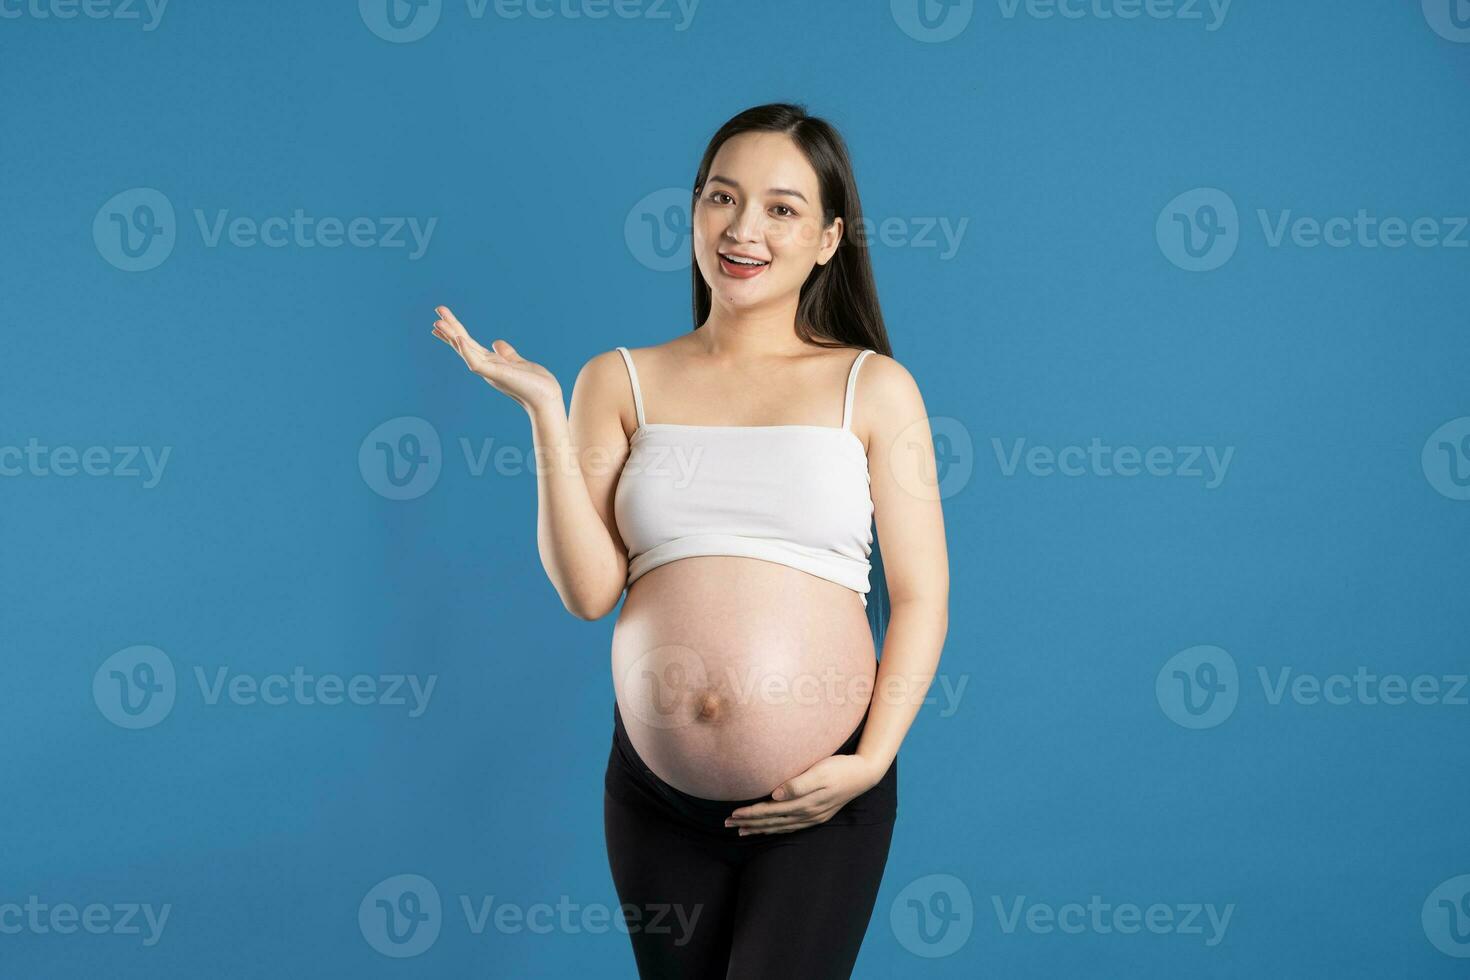 retrato do grávida ásia mulher, isolado em azul fundo foto